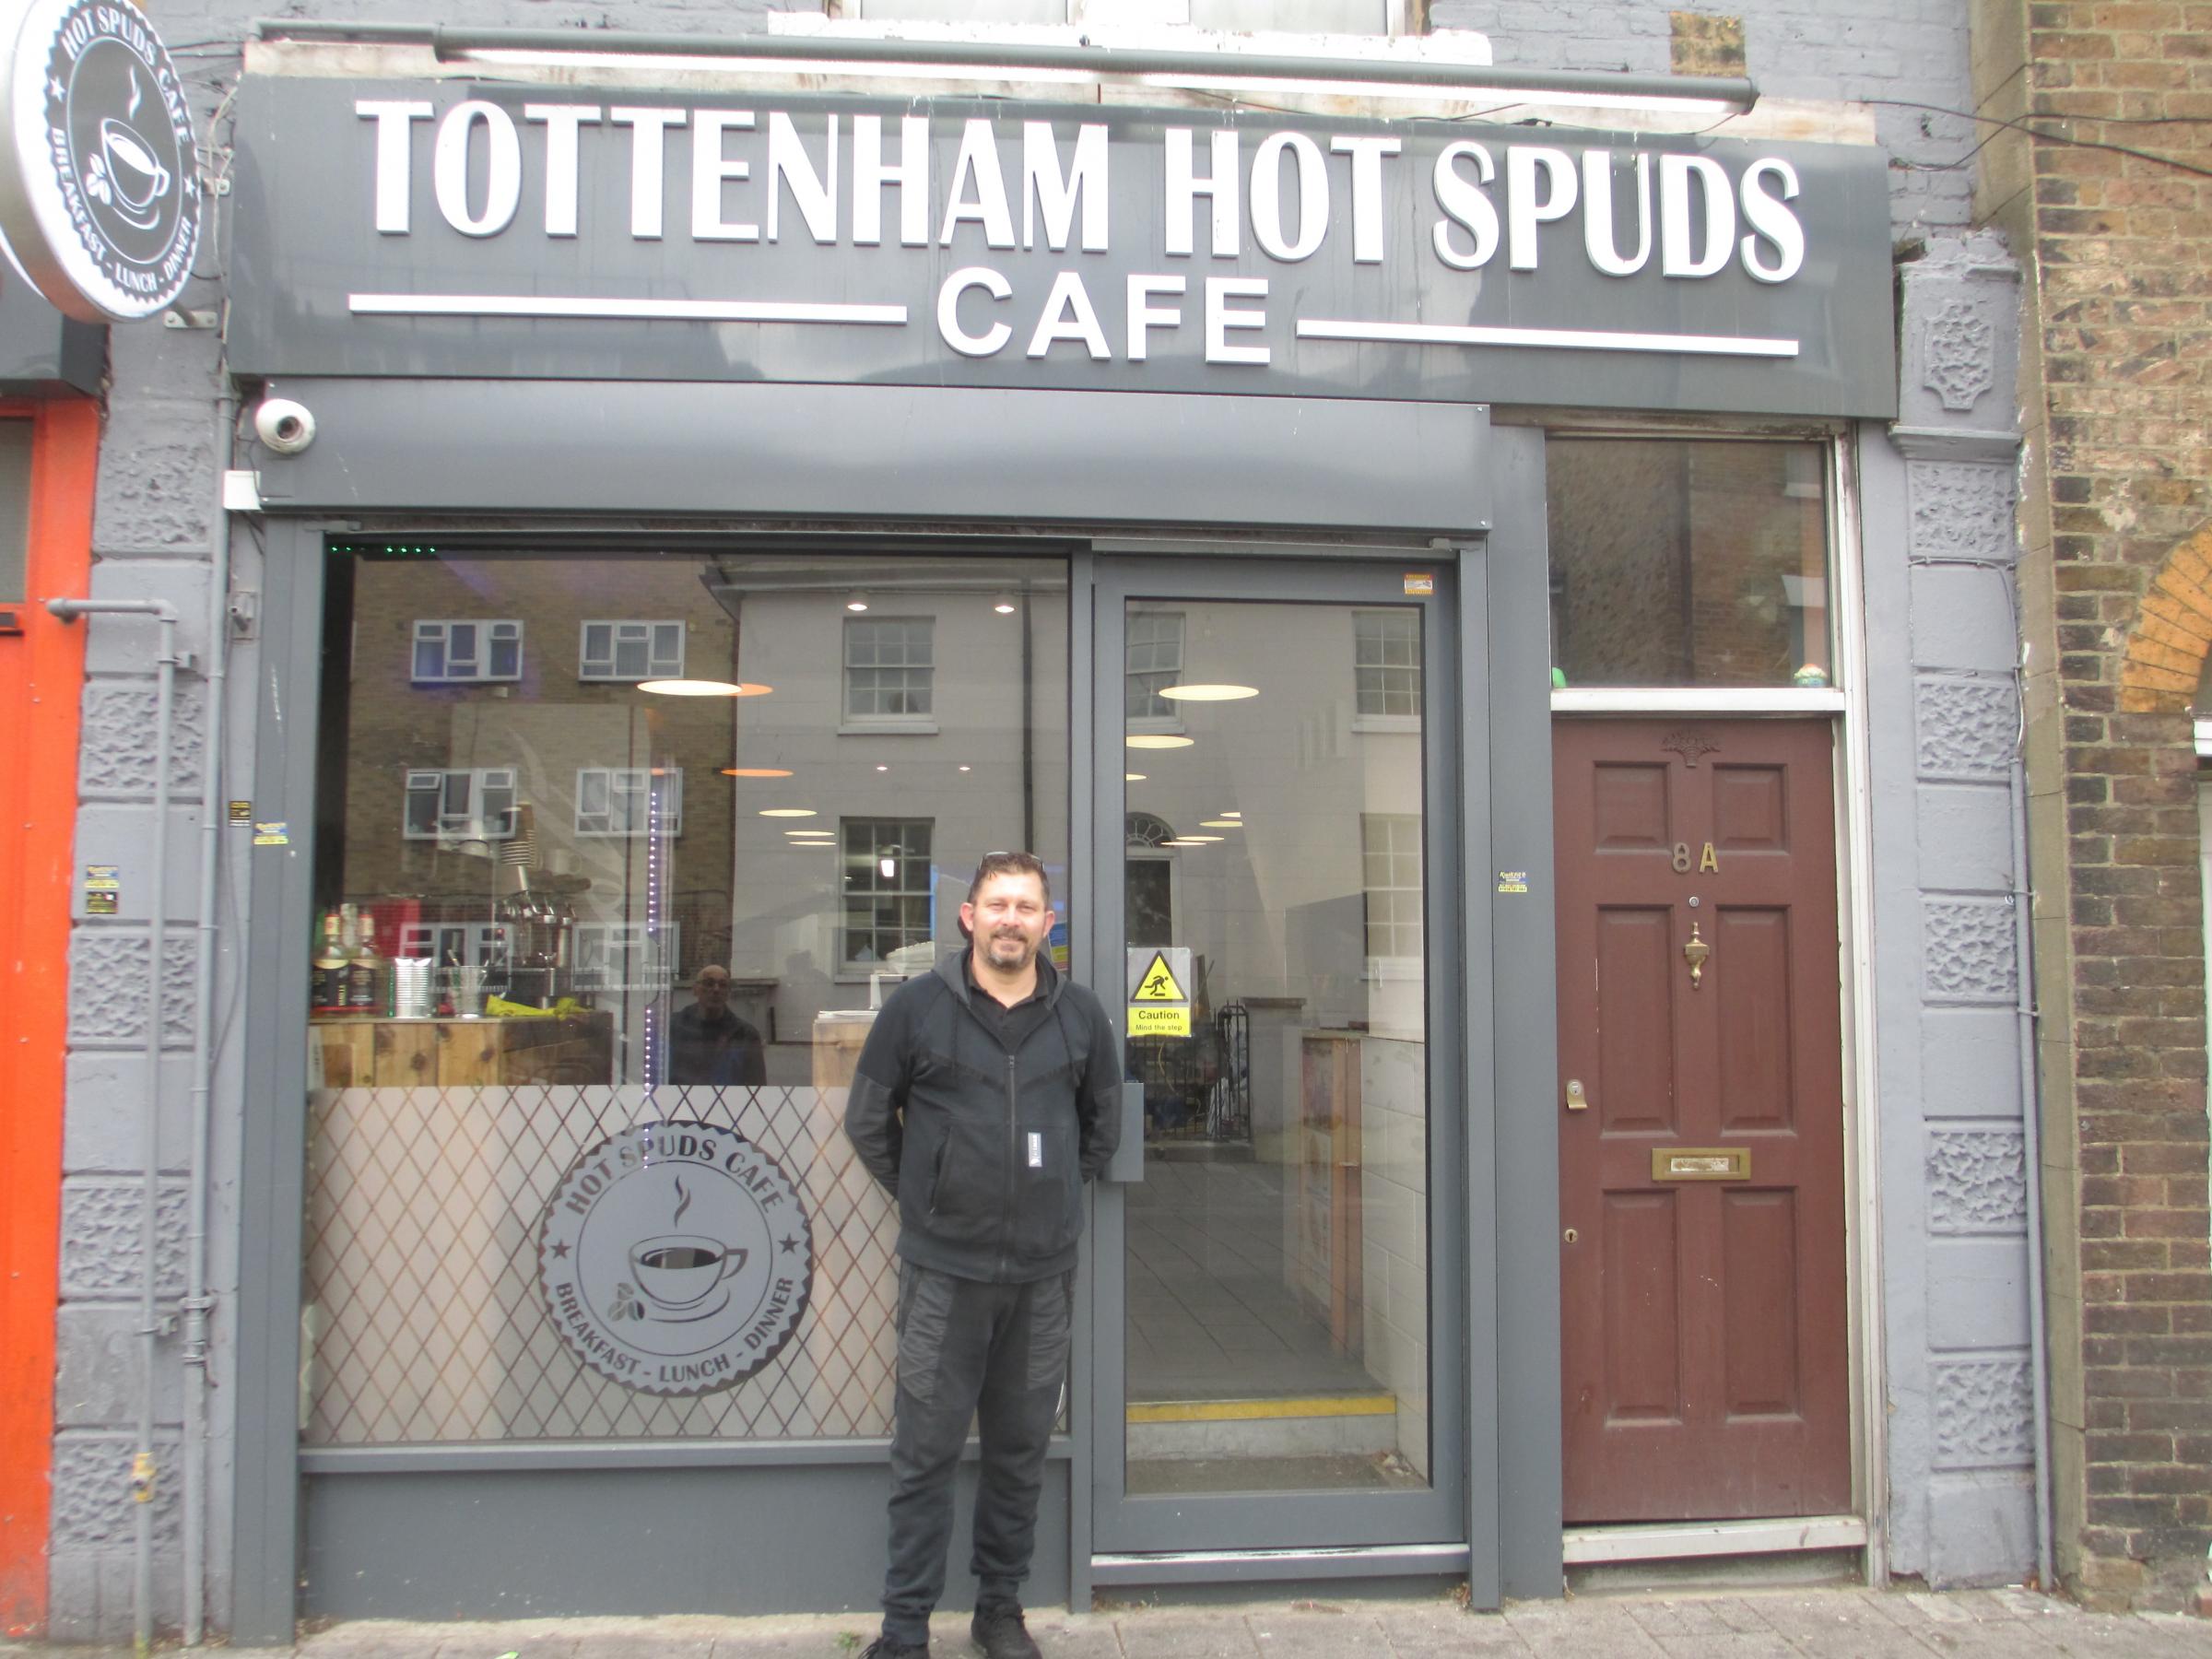 Devrim Tangul outside Tottenham Hot Spuds Cafe in White Hart Lane